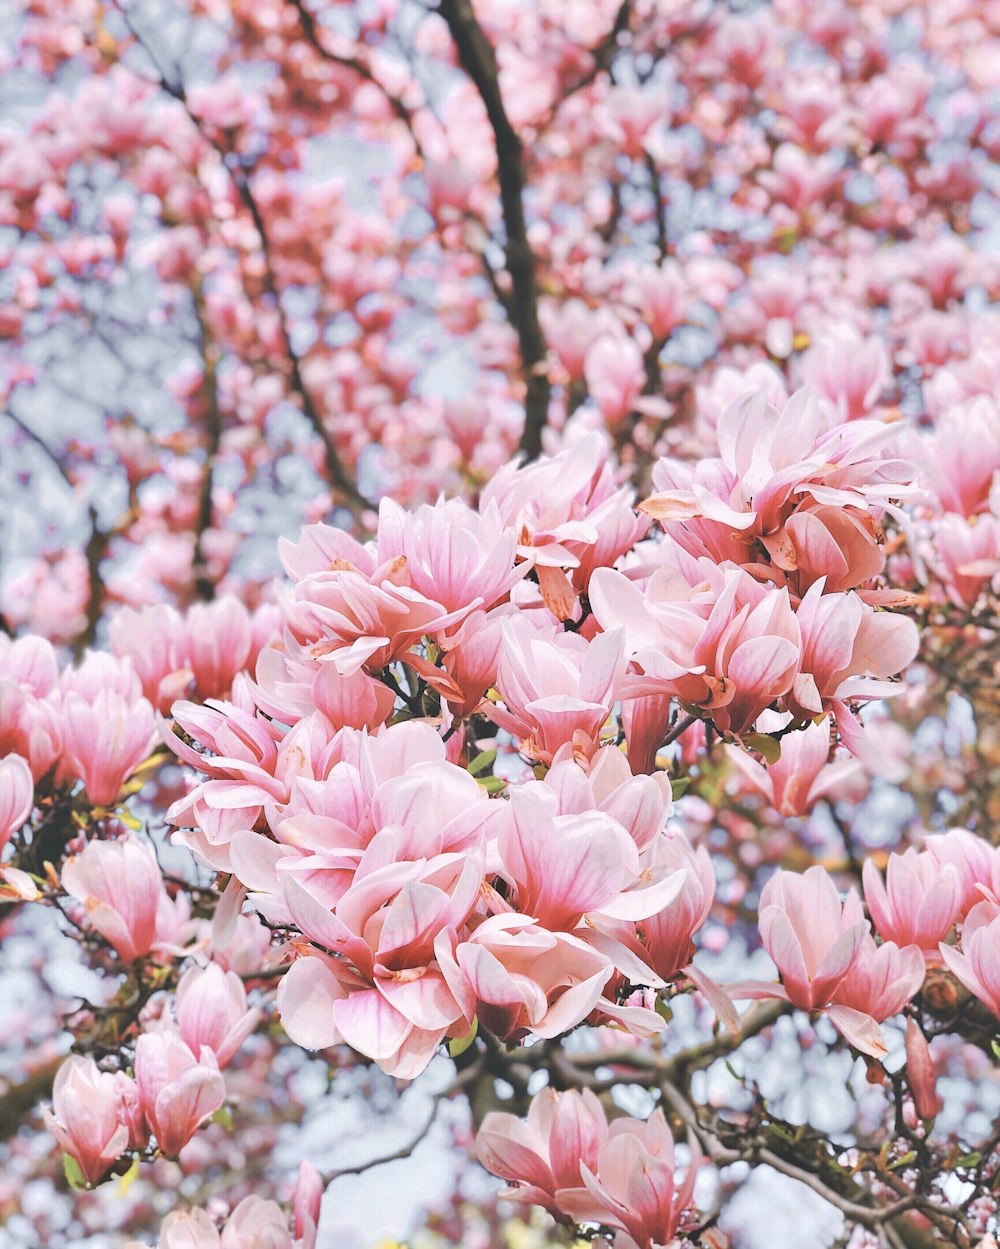 Un árbol lleno de muchas flores rosadas